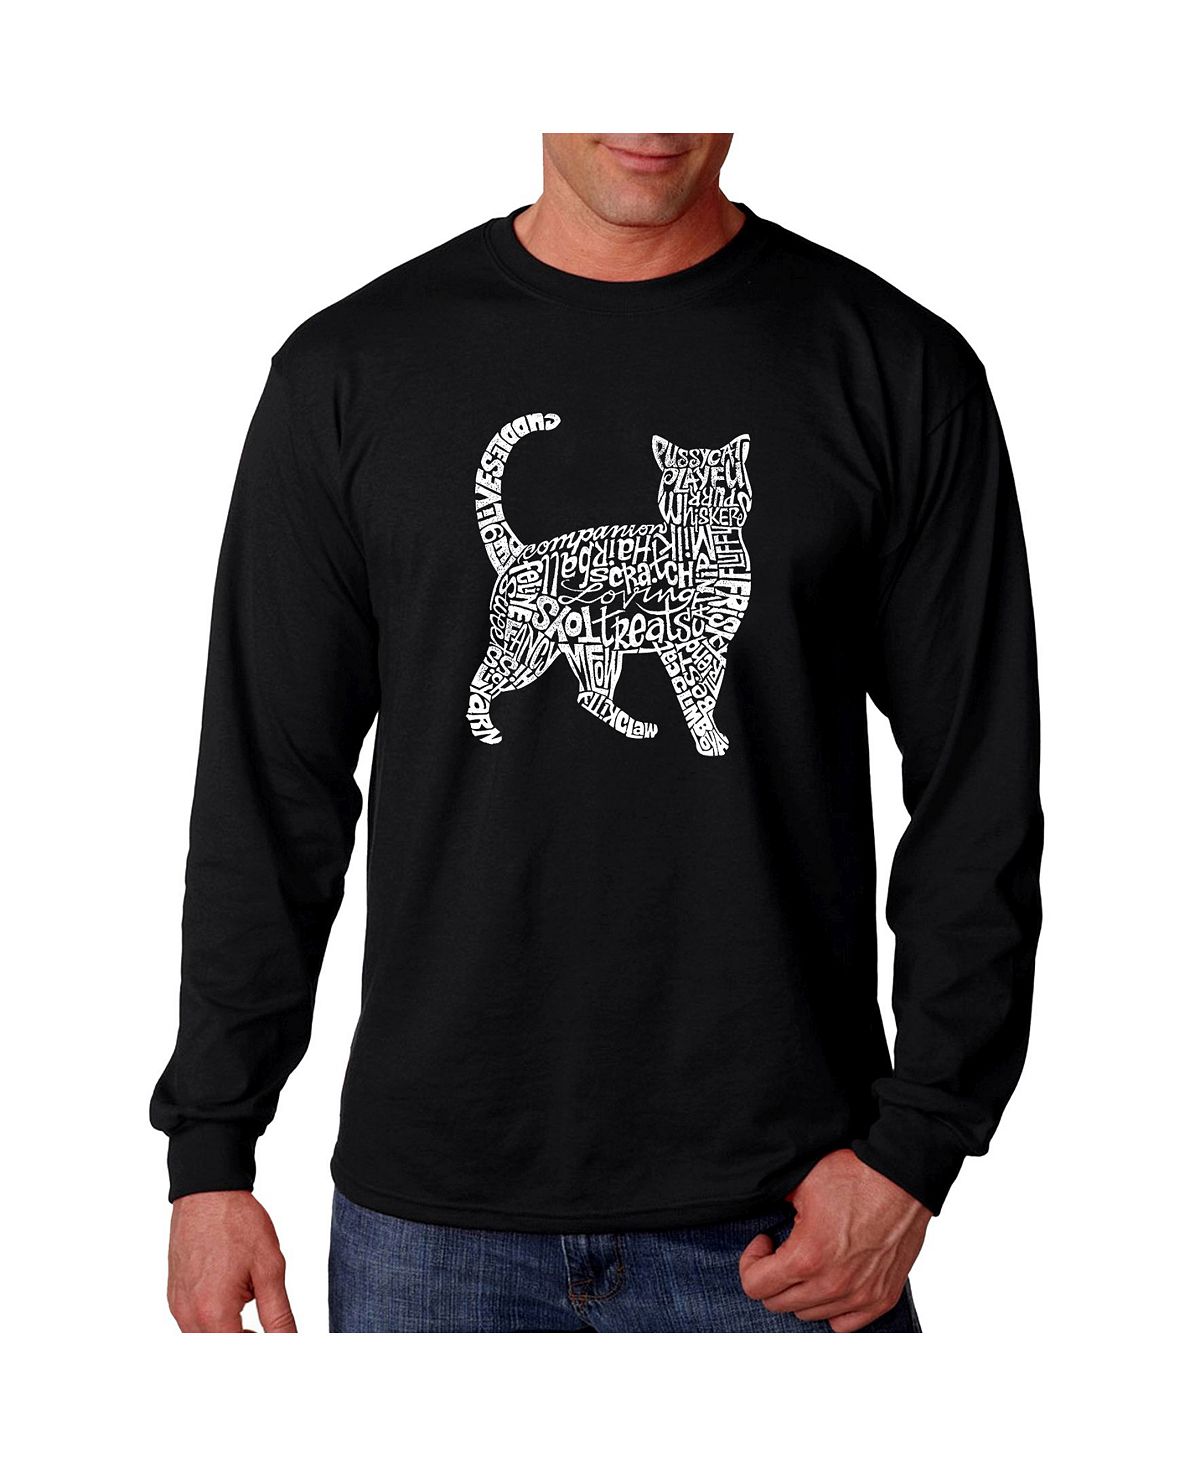 Мужская футболка с длинным рукавом word art - кошка LA Pop Art, черный мужская футболка с длинным рукавом word art la pop art черный